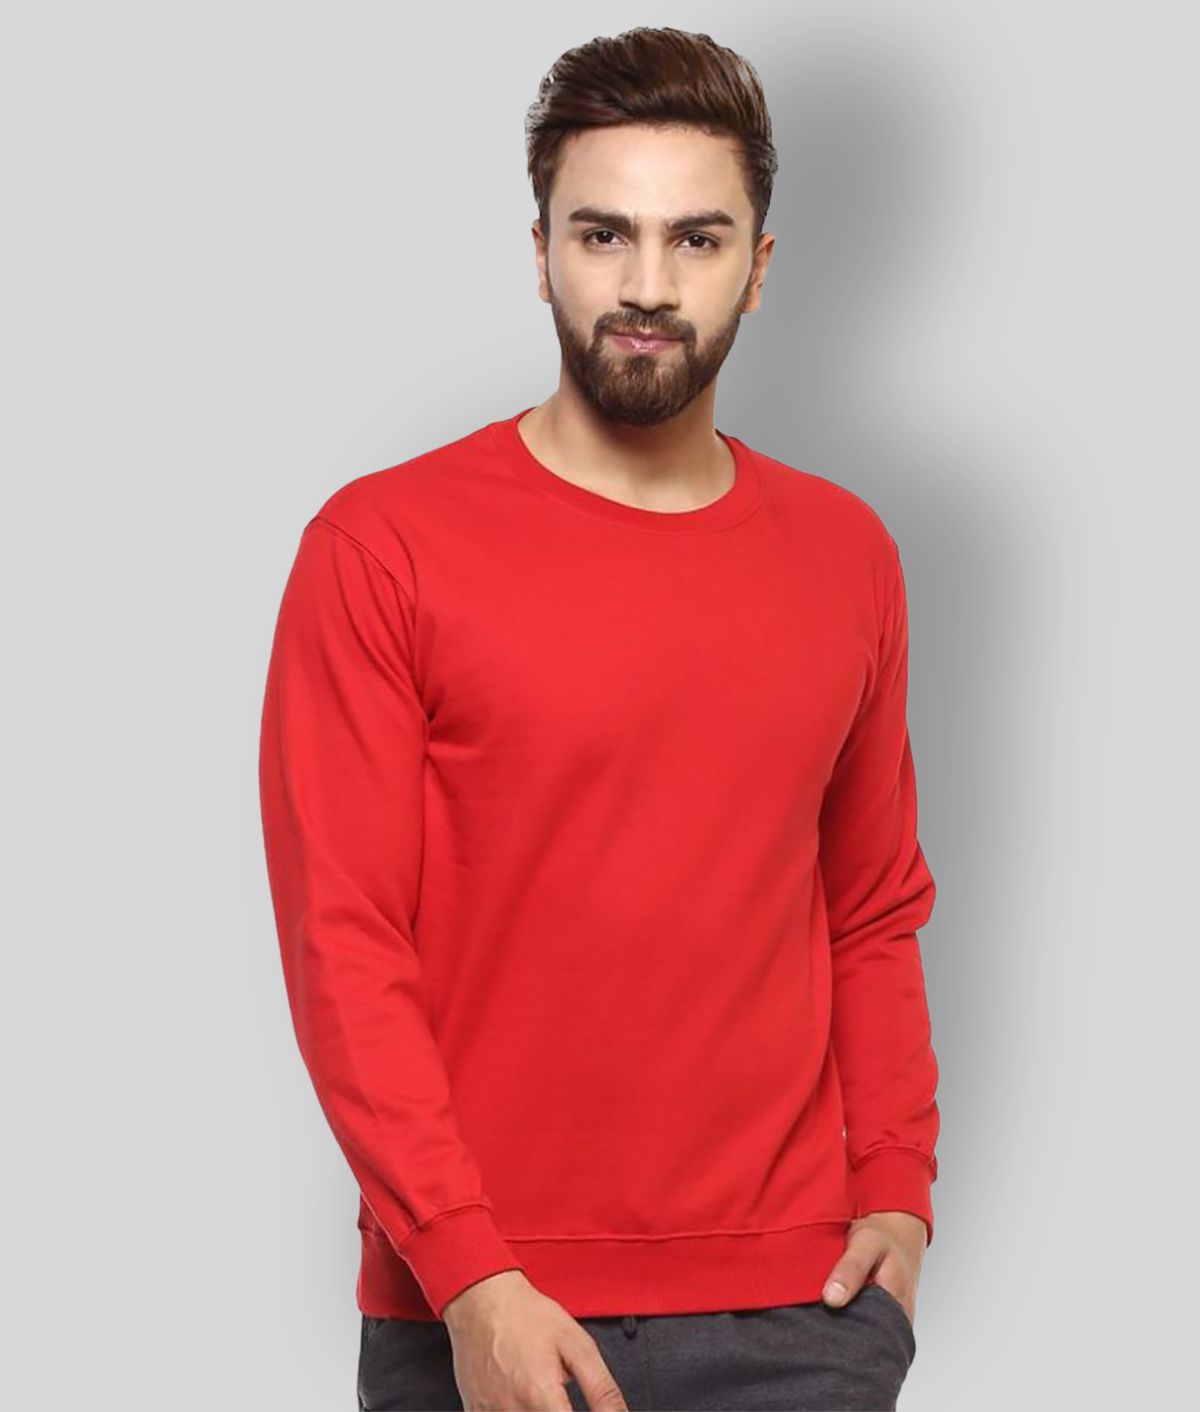     			Leotude Red Sweatshirt Pack of 1